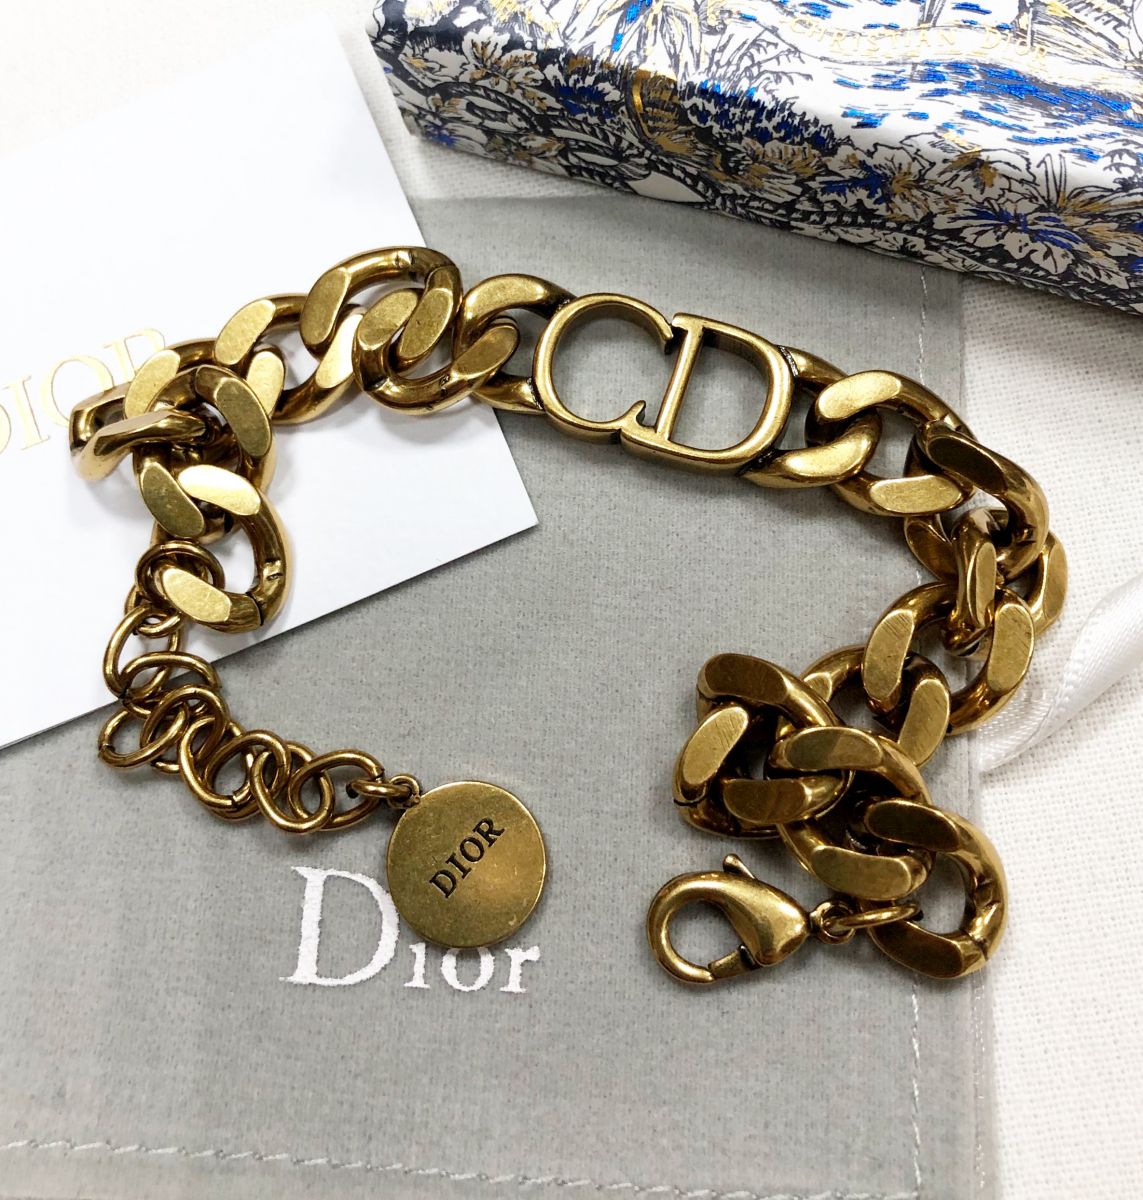 Браслет Dior цена 15 385 руб
